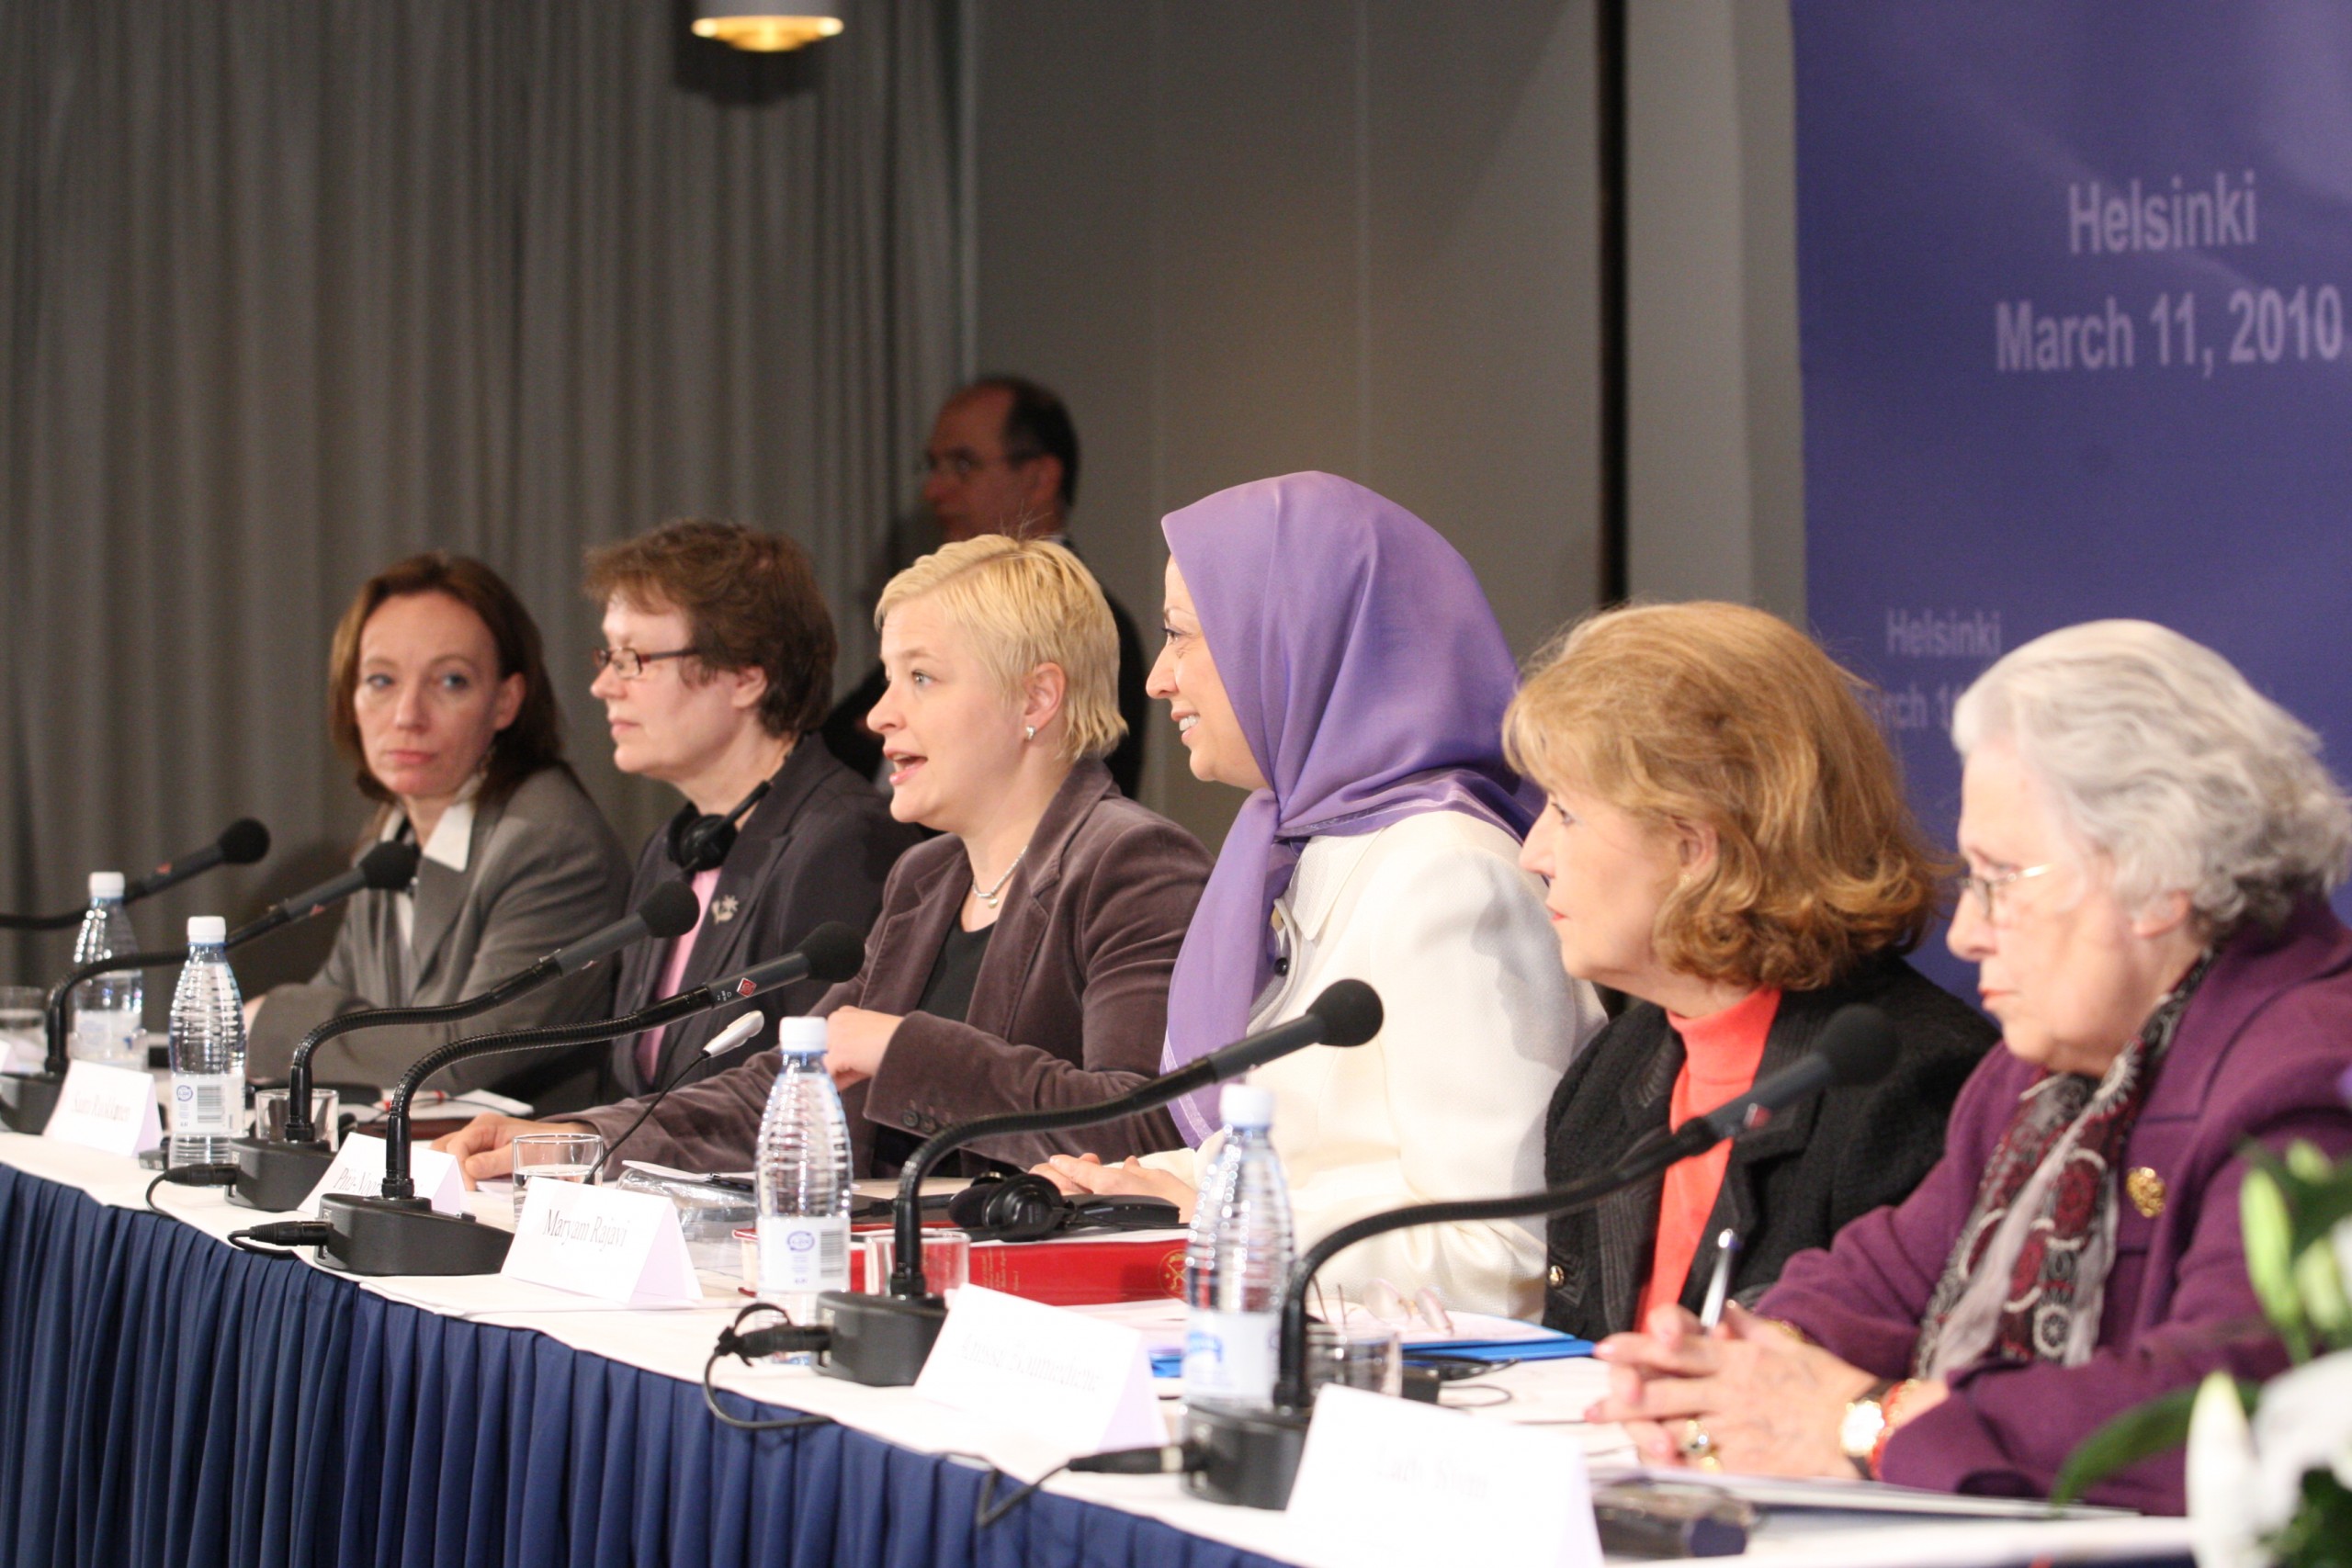 Réunion de solidarité des femmes finlandaises et iraniennes